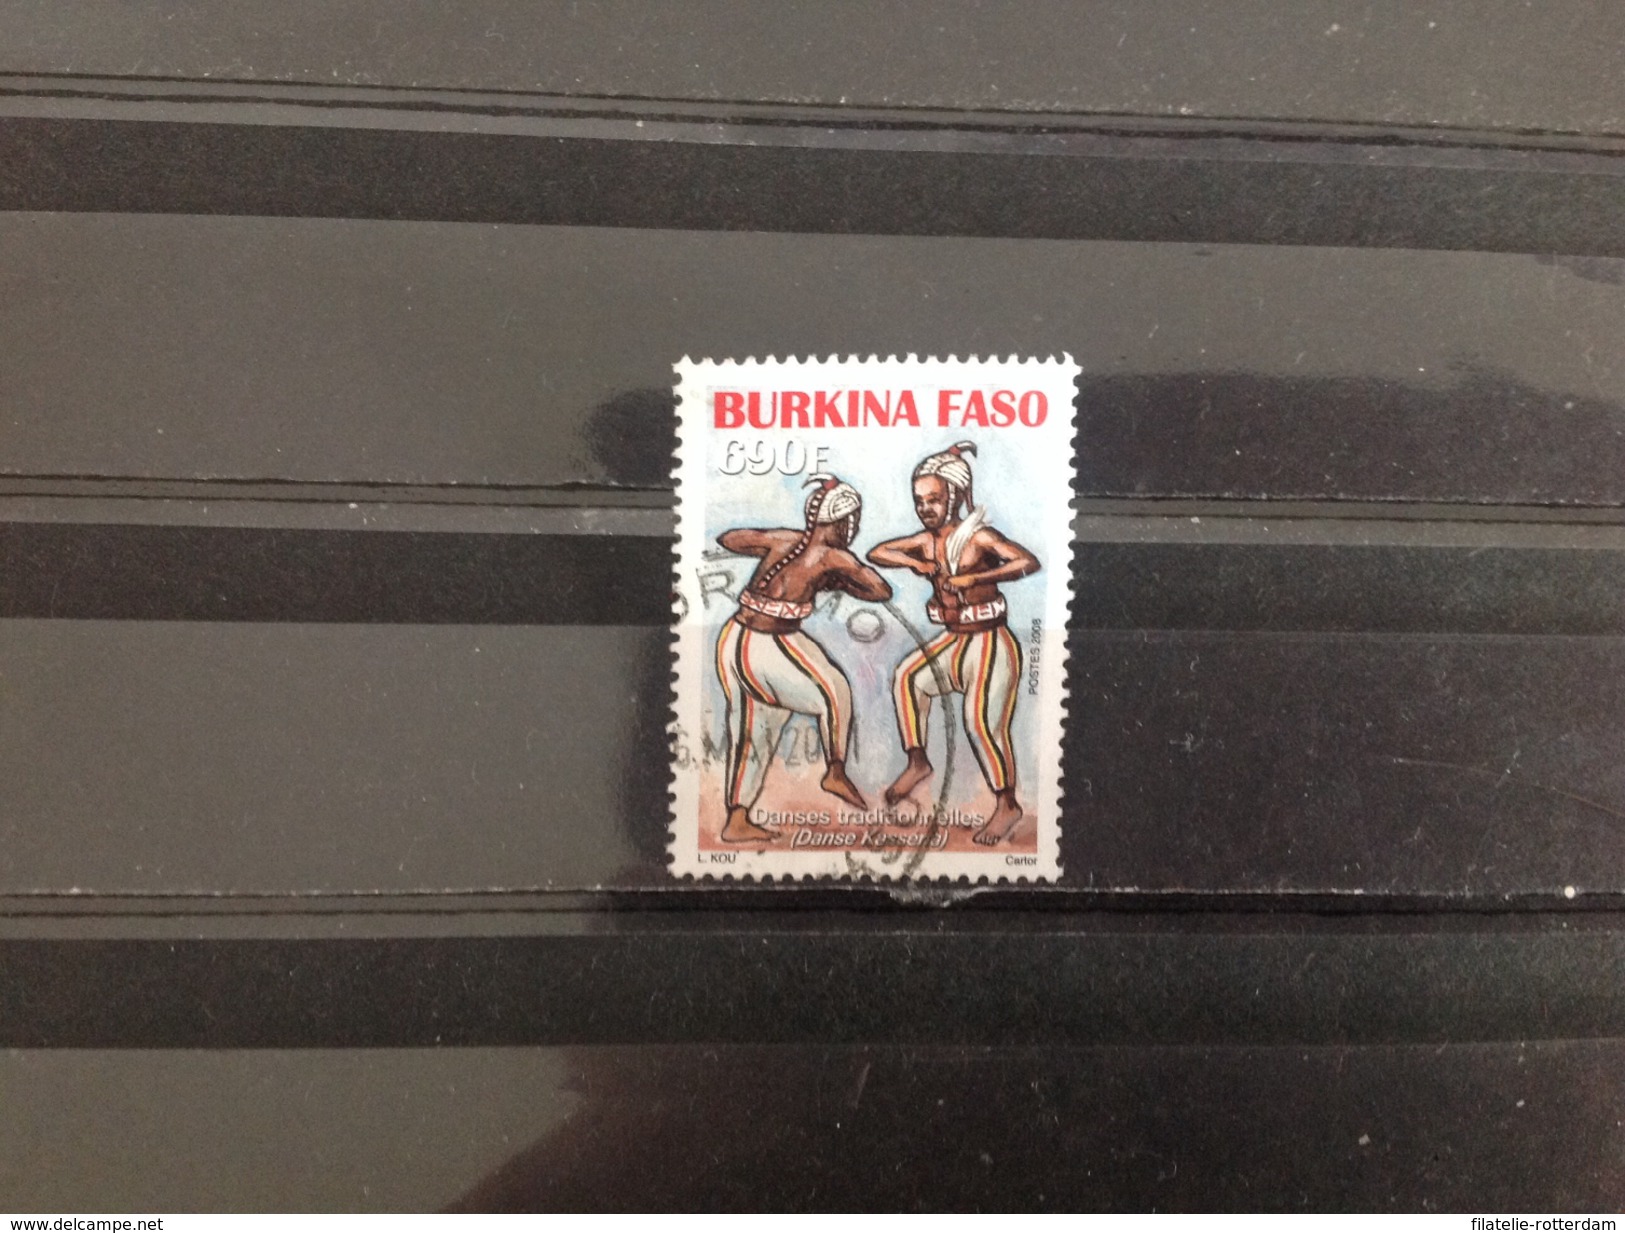 Burkina Faso - Traditionele Dansen (690) 2008 Very Rare! High Value! - Burkina Faso (1984-...)